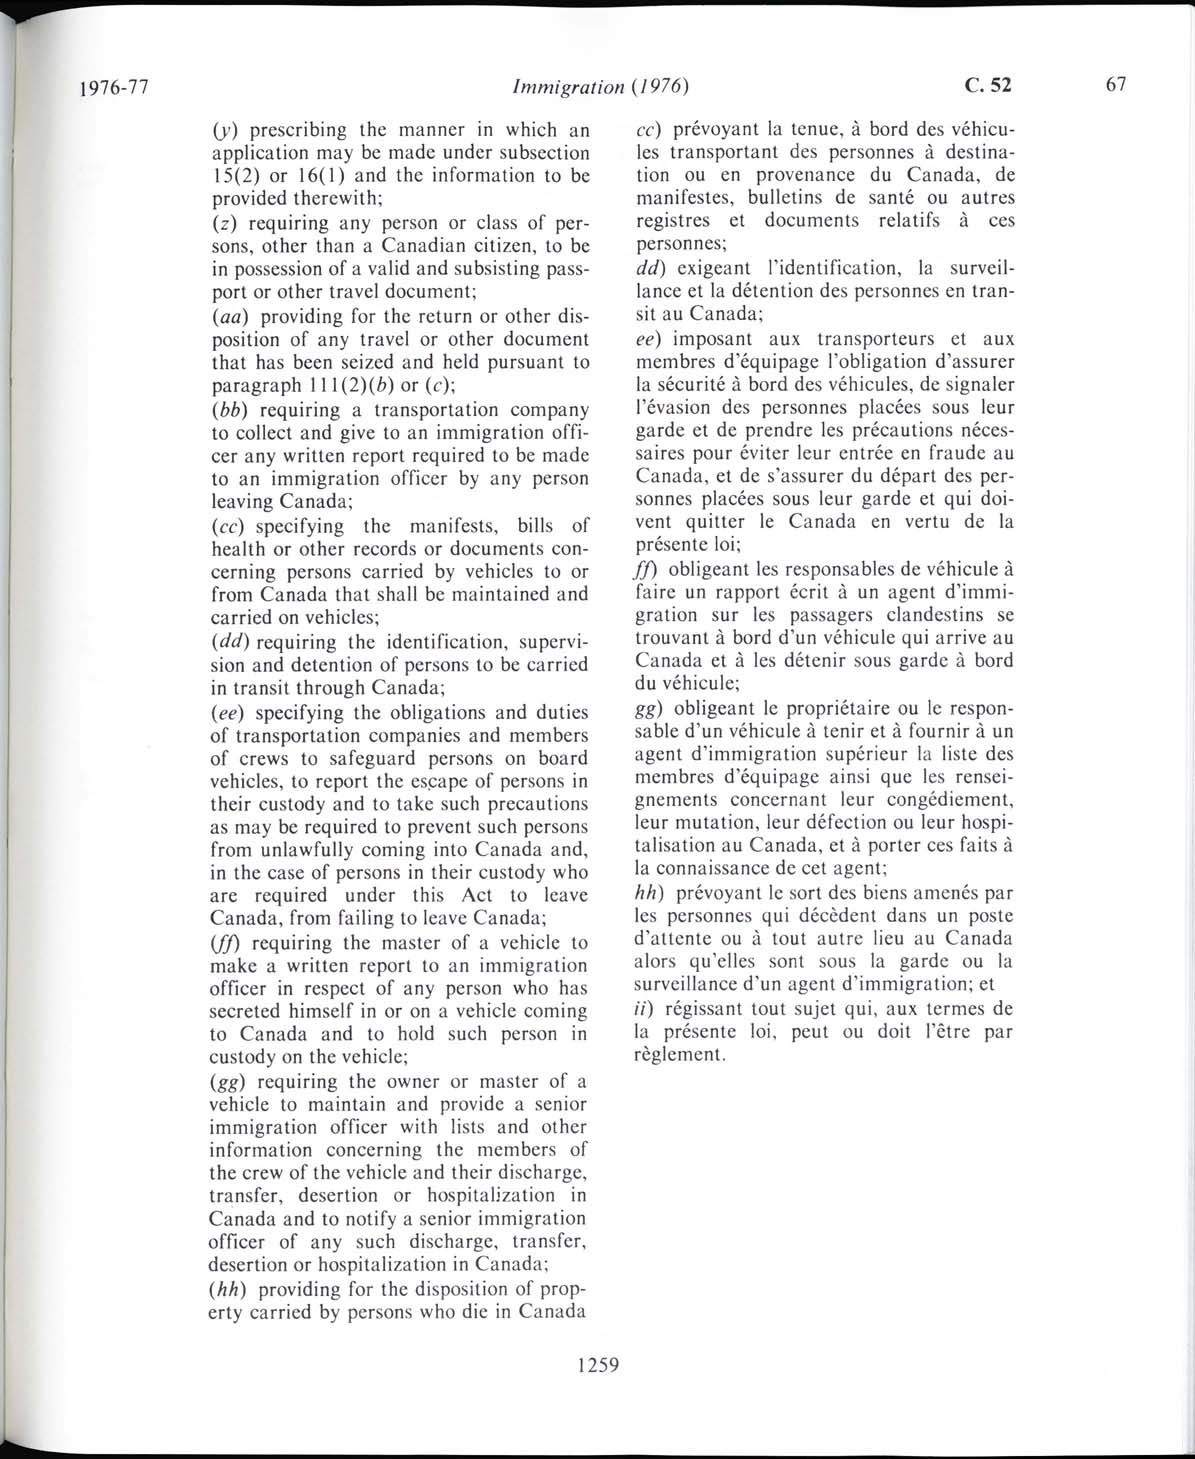 Page 1259 Loi sur l’immigration de 1976